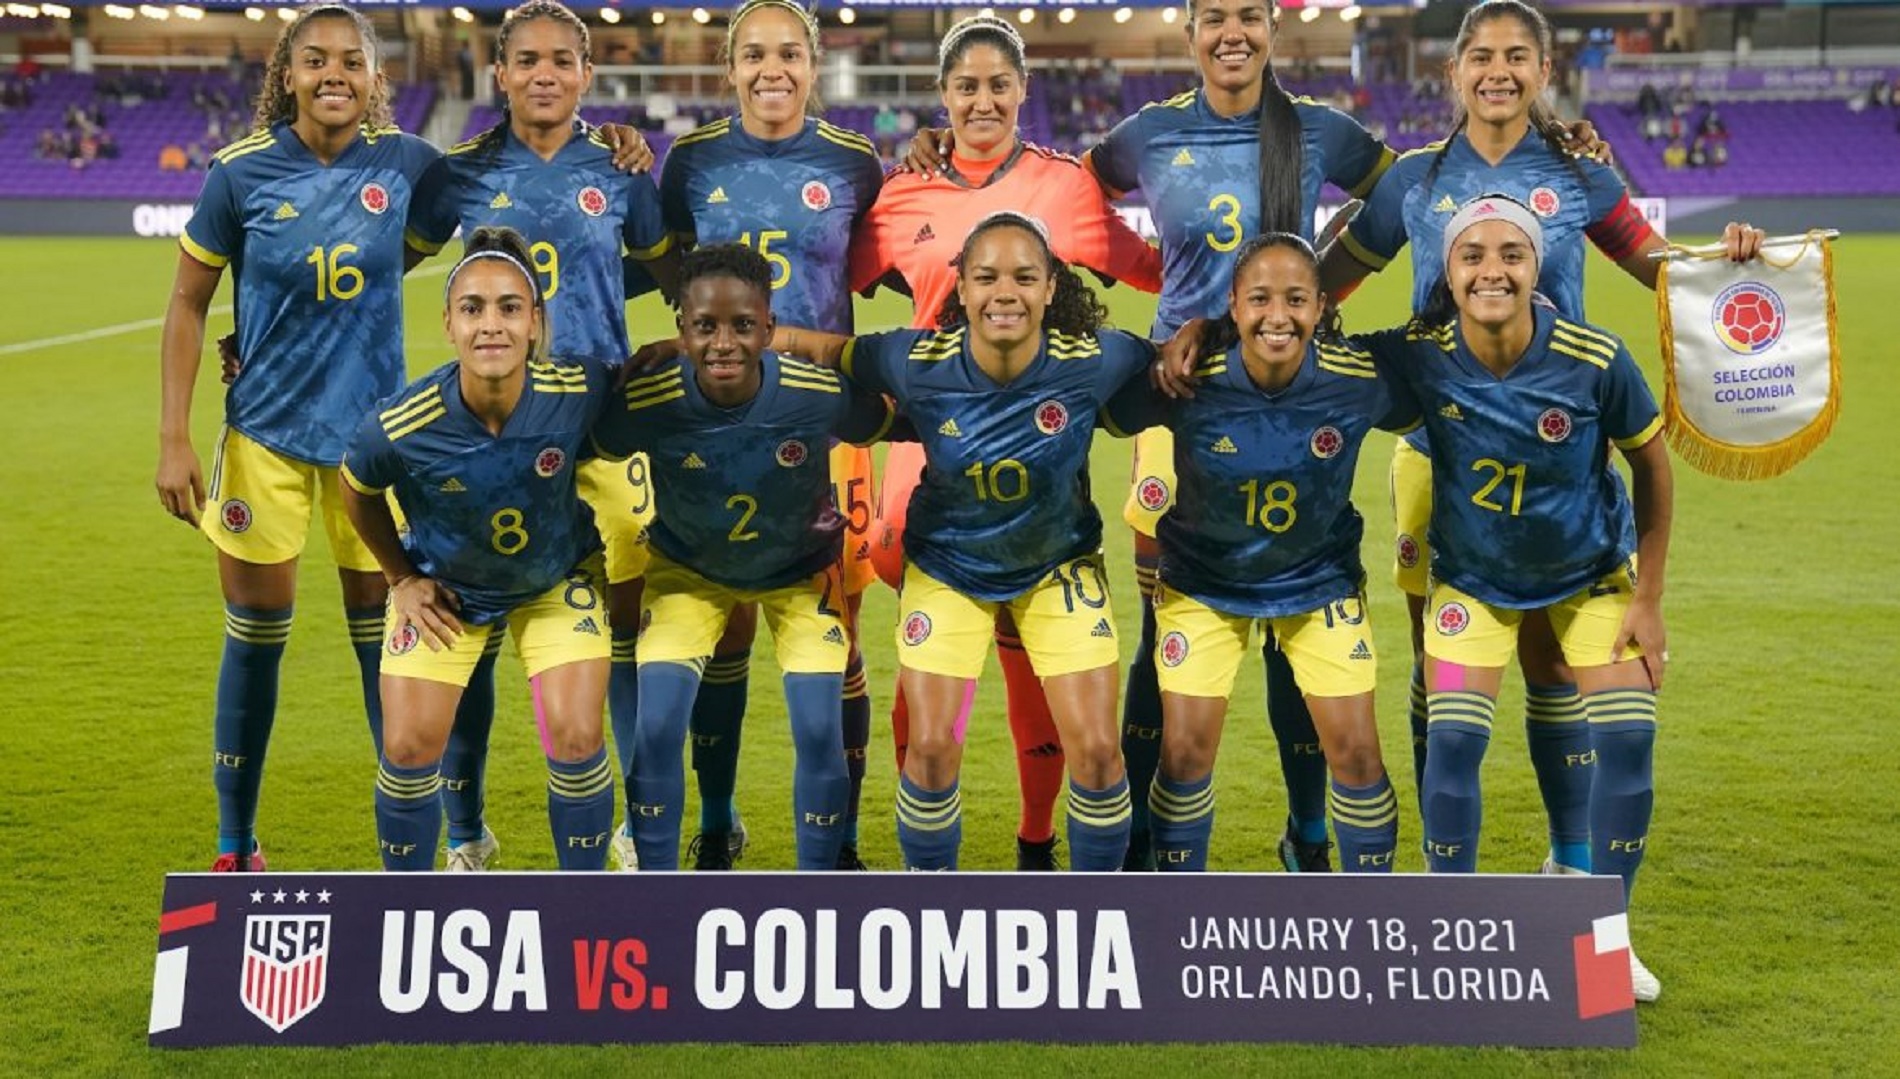 Alineación equipo Selección Colombia Femenina que enfrentó a Estados Unidos en Orlando, Florida, EU.
Crédito Federación Colombiana de Fútbol